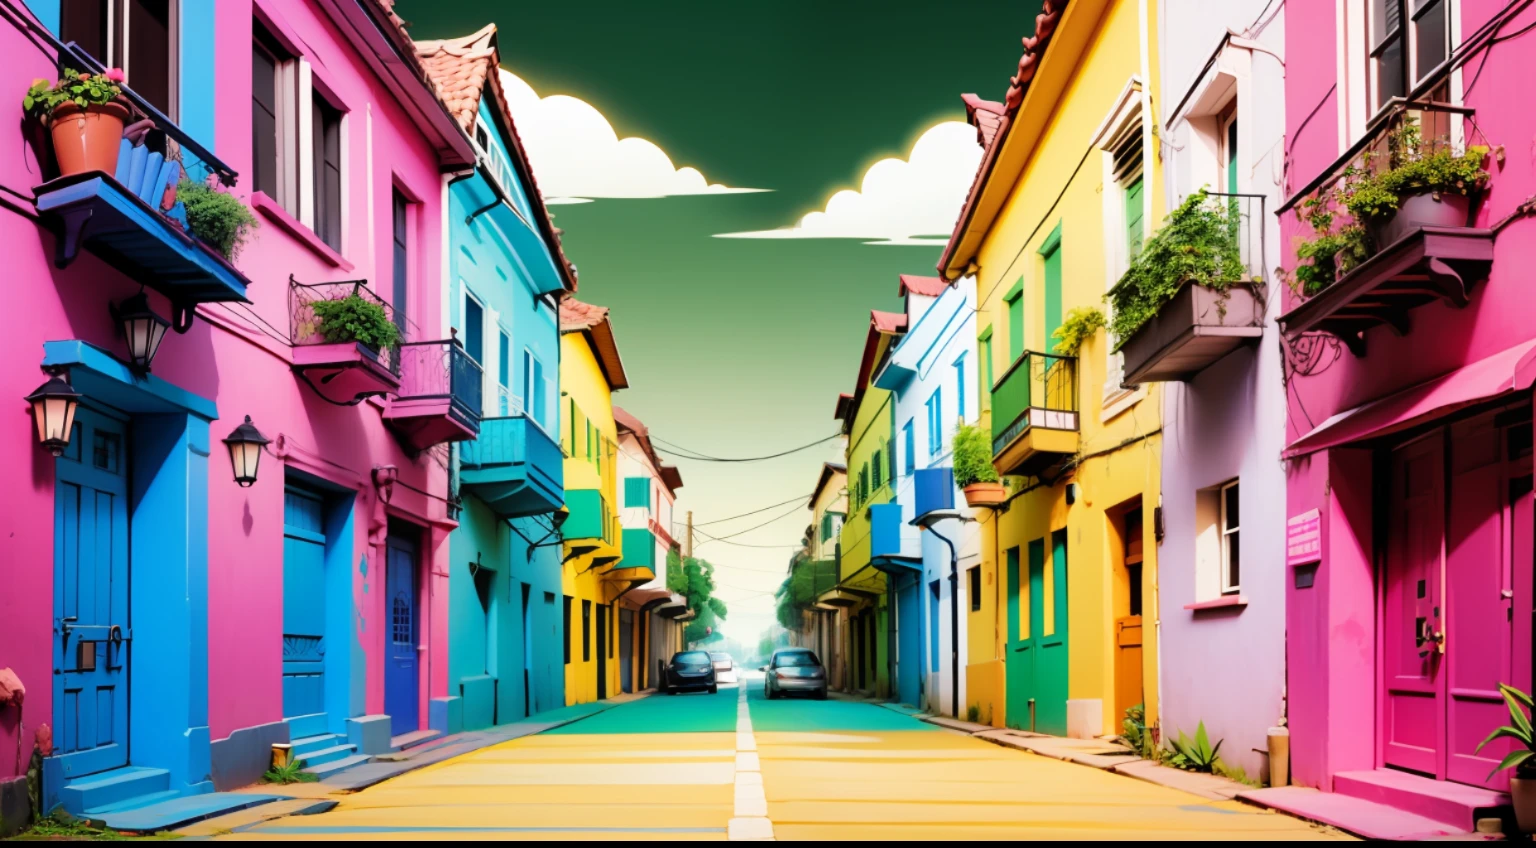 다양한 색상의 브라질 삼바 요소가 포함된 Wallpapper 배경